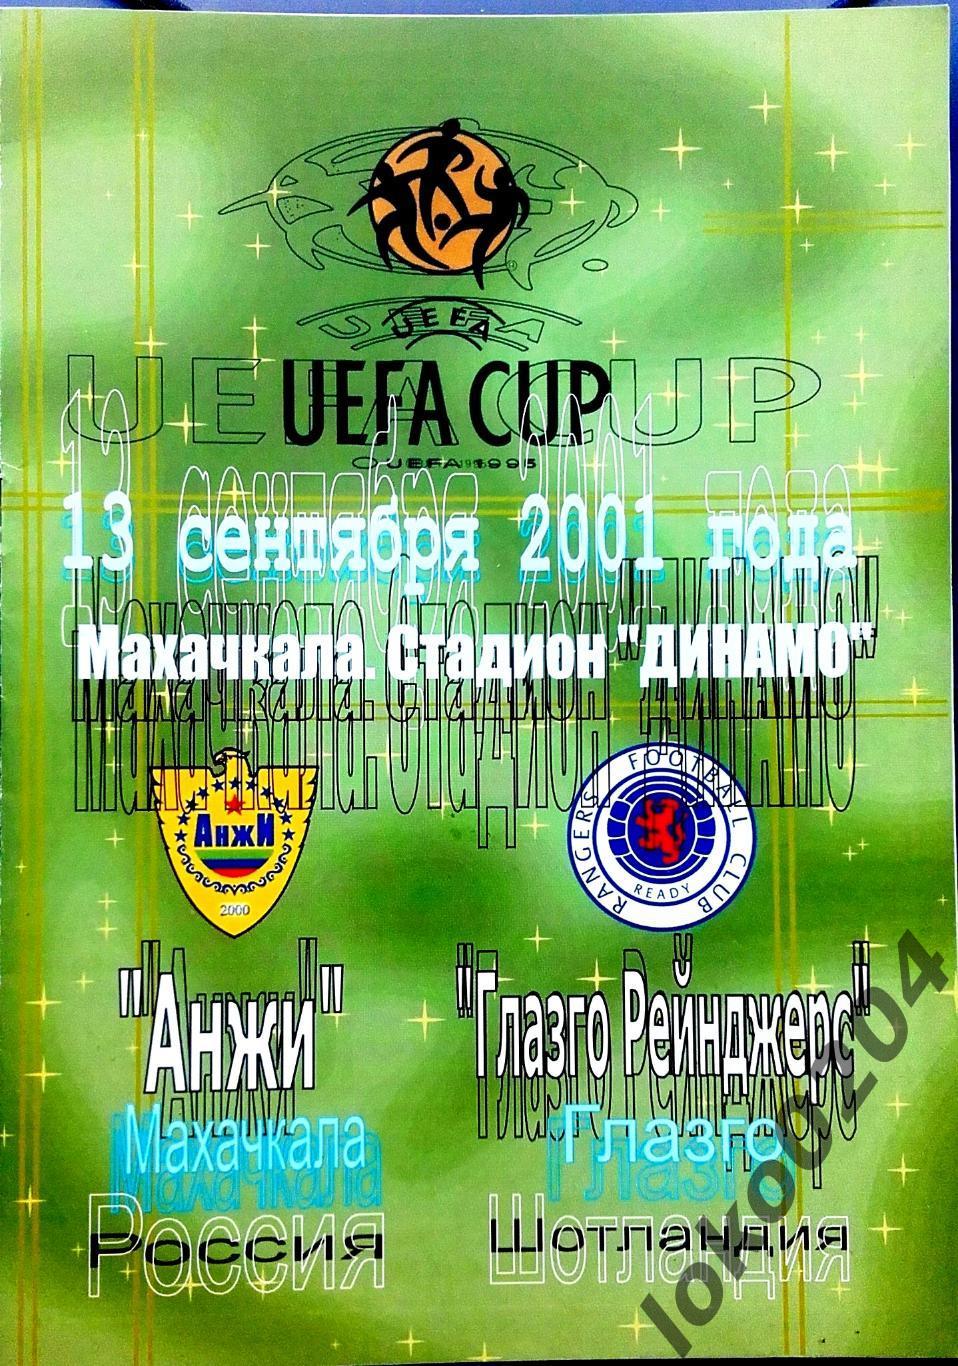 Анжи Махачкала - Глазго Рейнджерс, 2001 , Еврокубковый матч.